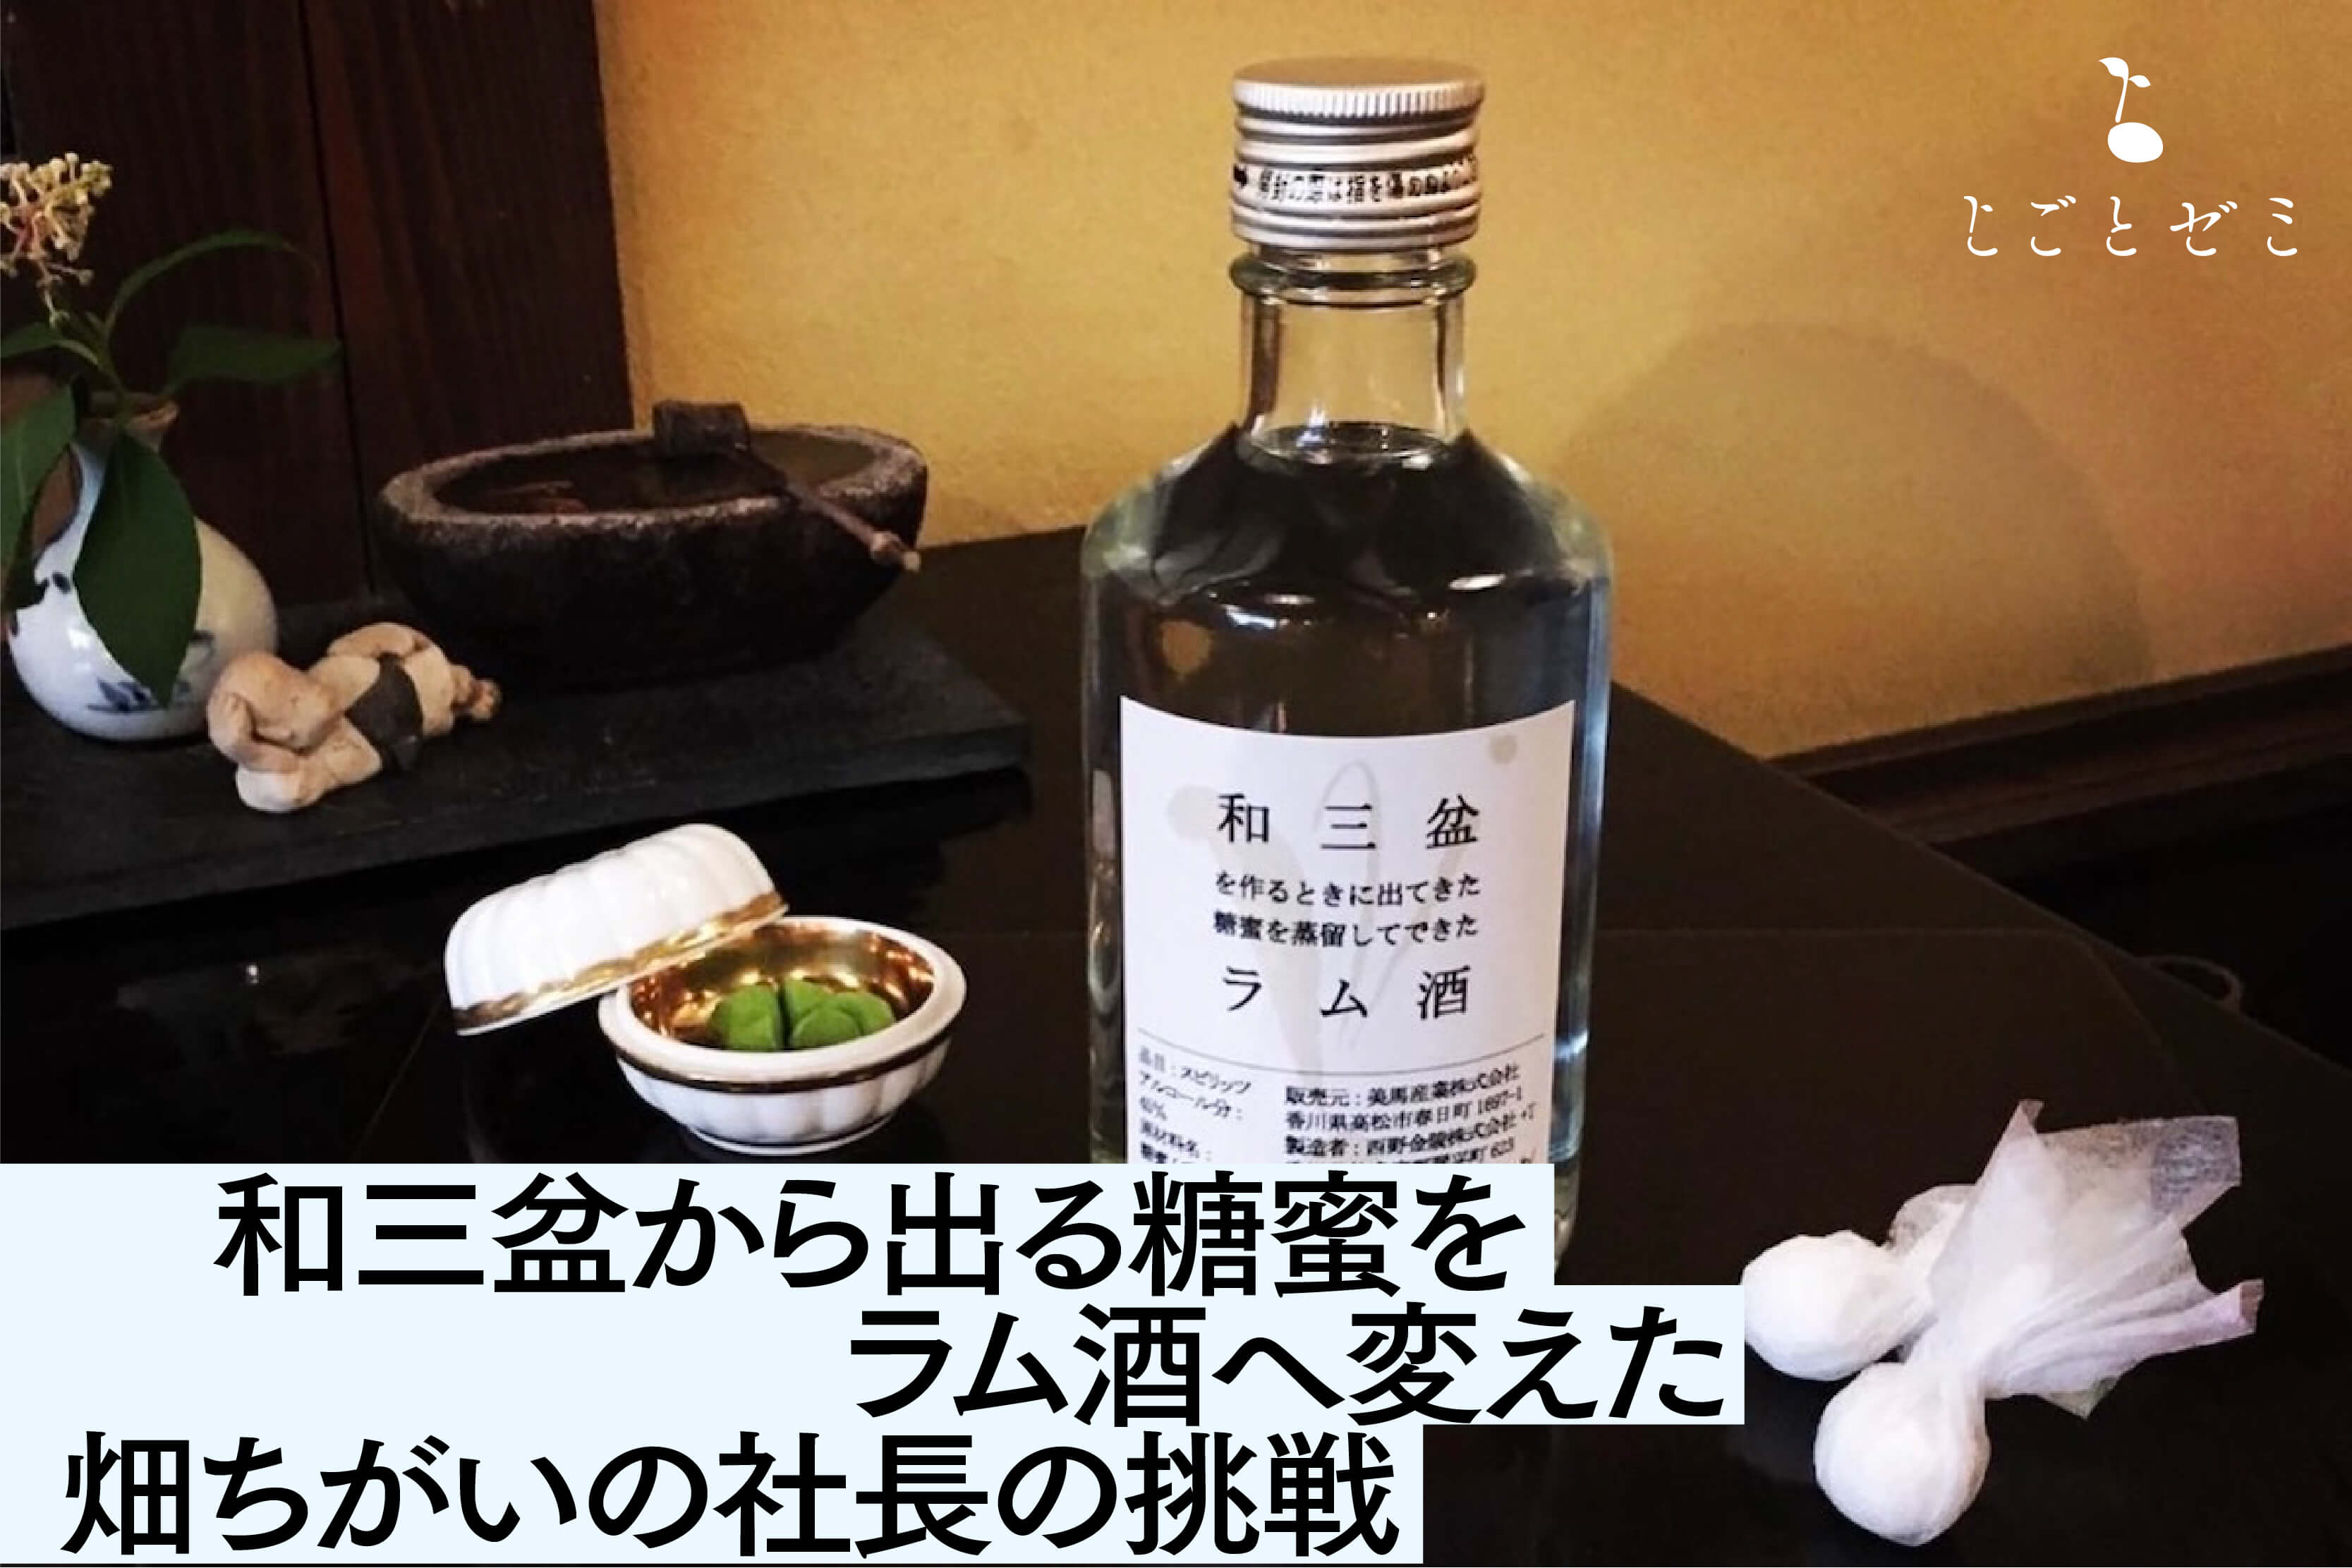 和三盆から出る糖蜜を  ラム酒へ変えた  畑ちがいの社長の挑戦